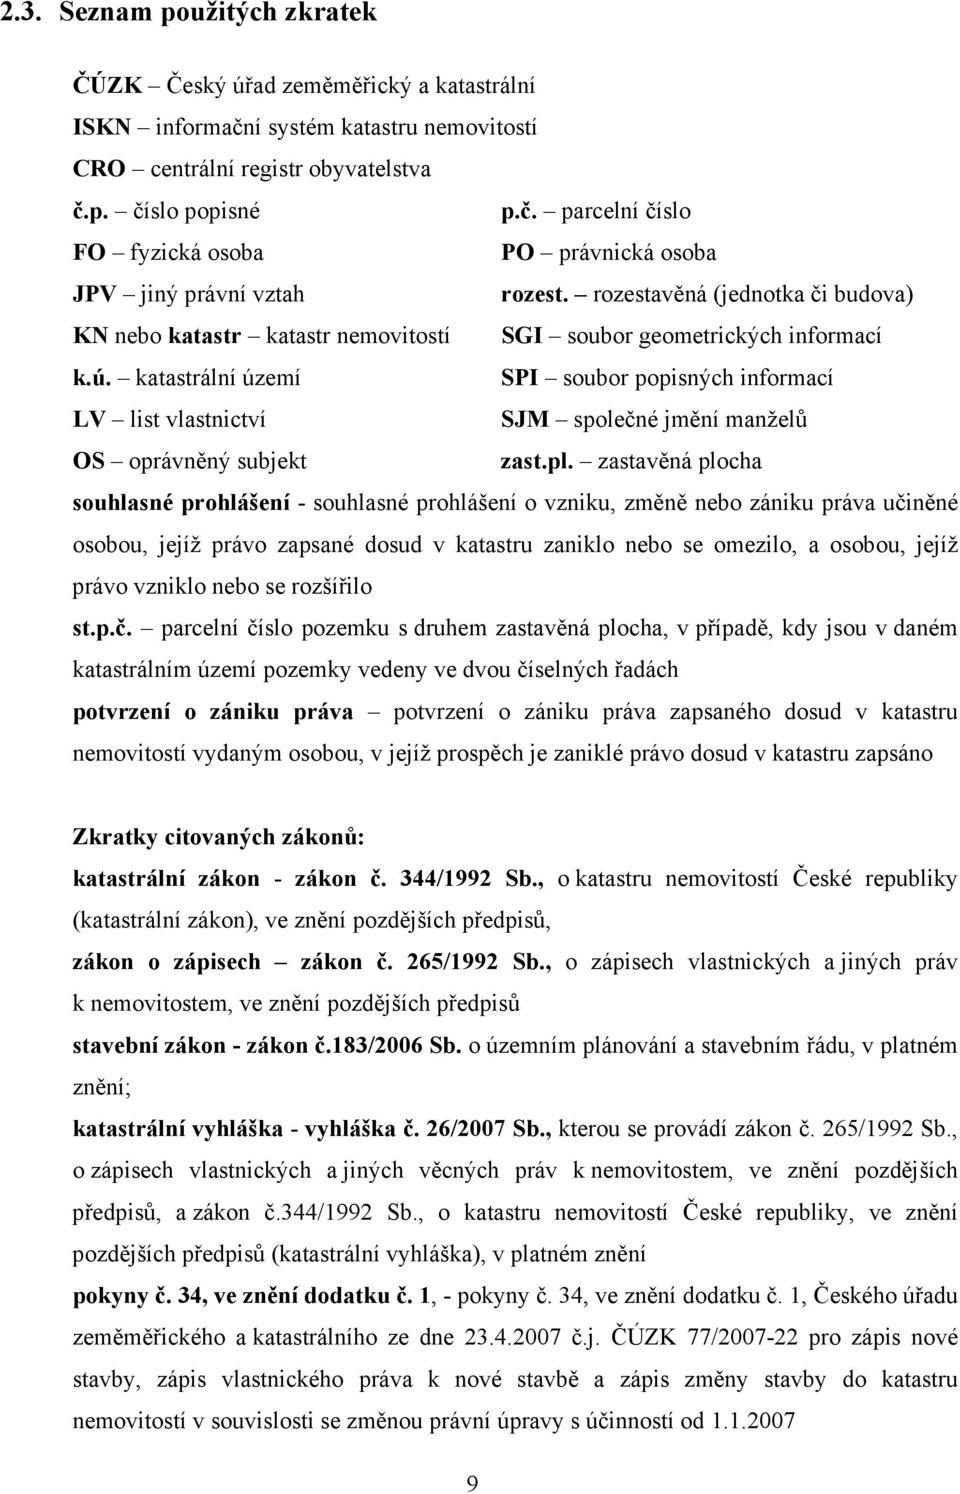 katastrální území SPI soubor popisných informací LV list vlastnictví SJM společné jmění manželů OS oprávněný subjekt zast.pl.